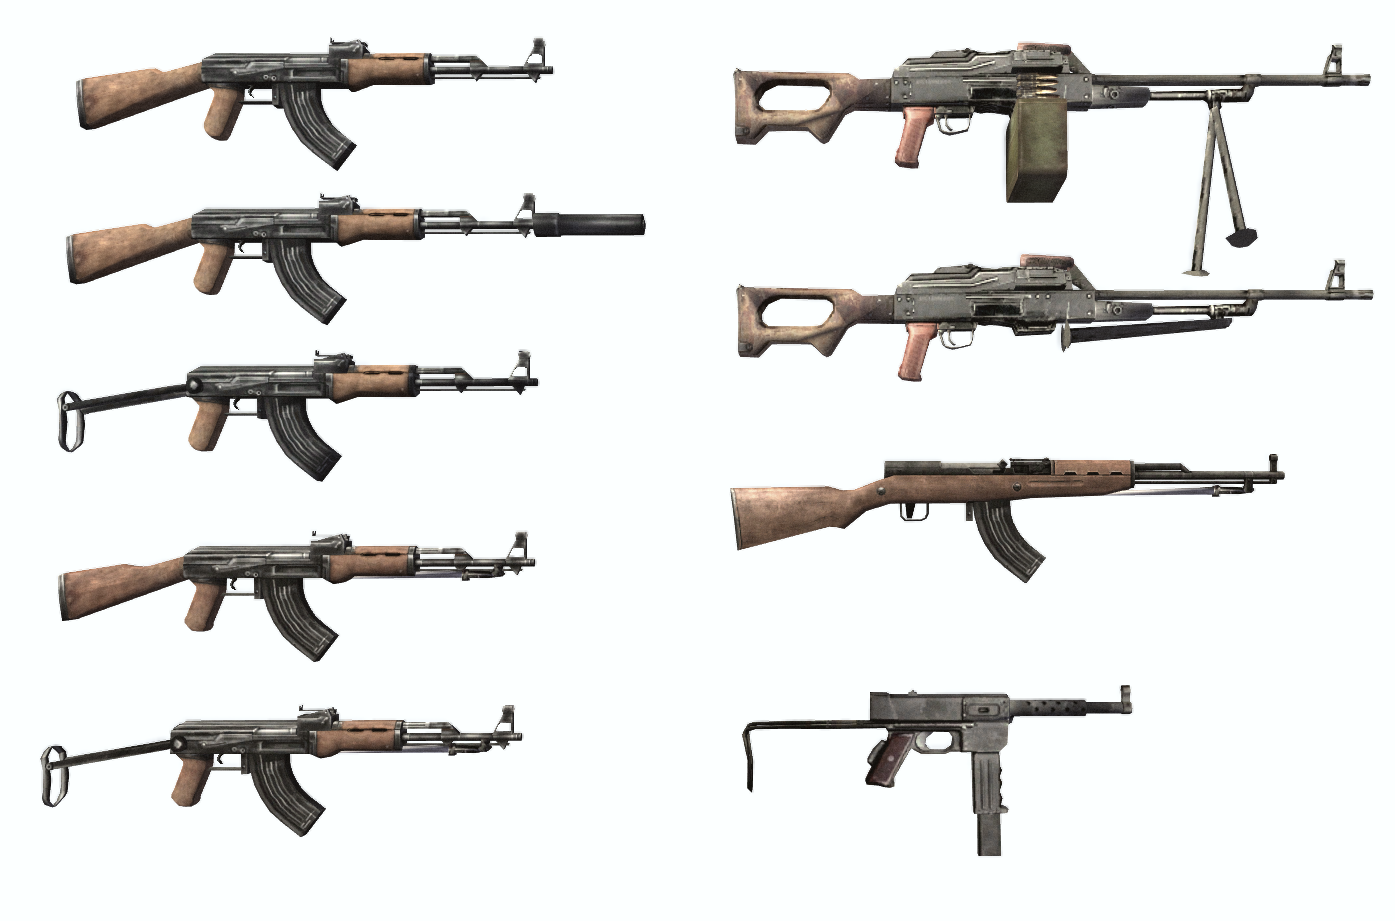 NVA army weapons: AK, Type-56, PKM, PKS, Type-63 Rifle and MAT-49 (7,62×25 mm mod)